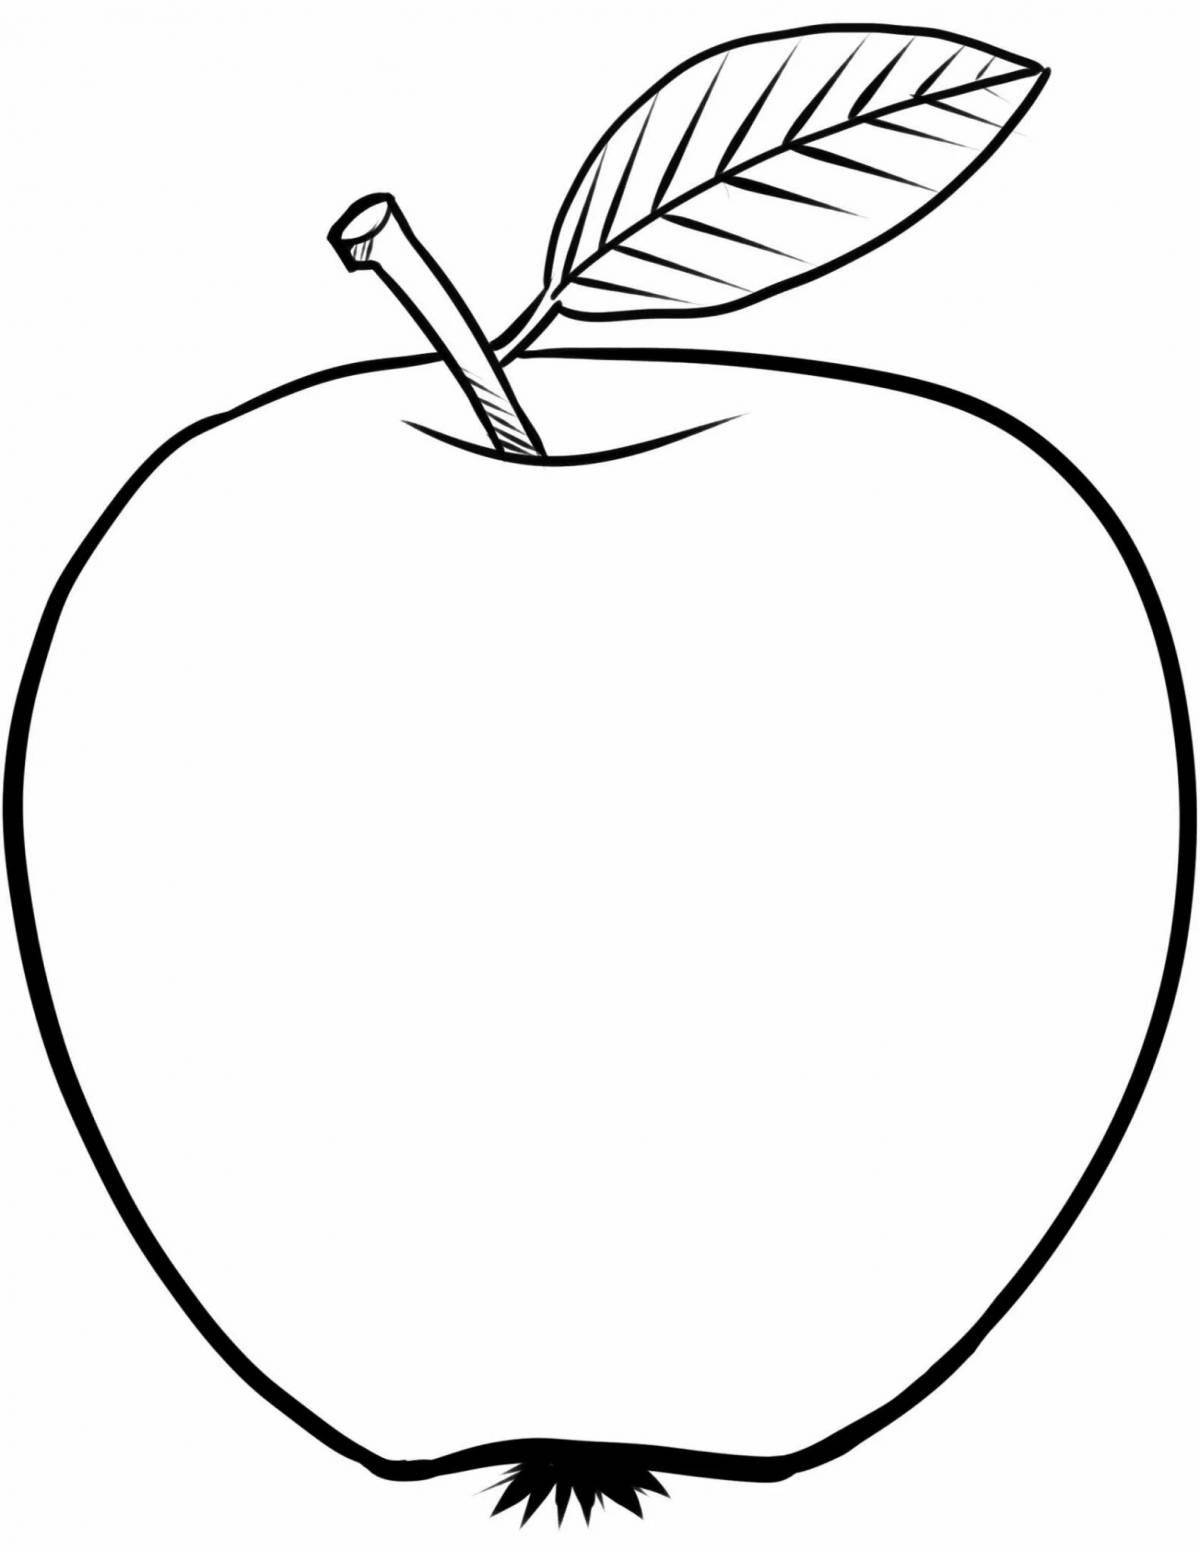 Восхитительный рисунок яблока для детей